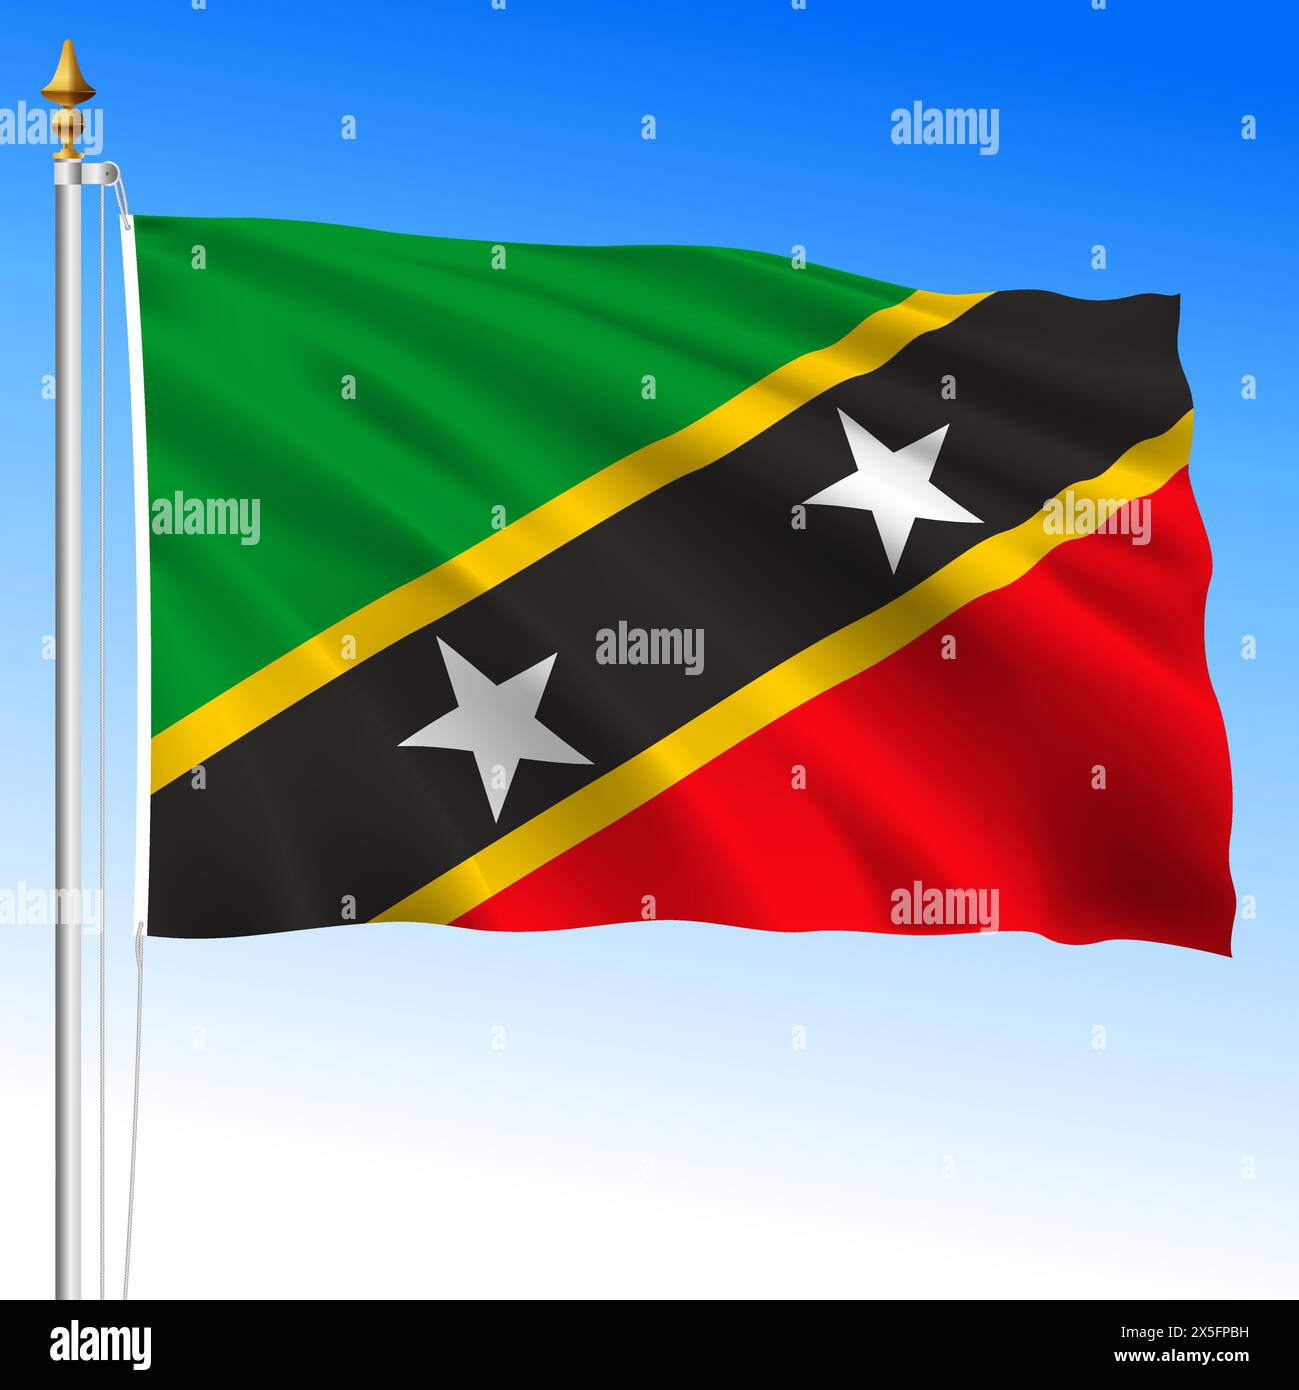 St. Christopher und Nevis, St. Kitts, offizielle nationale winkende Flagge, karibik, Vektor-Illustration Stock Vektor